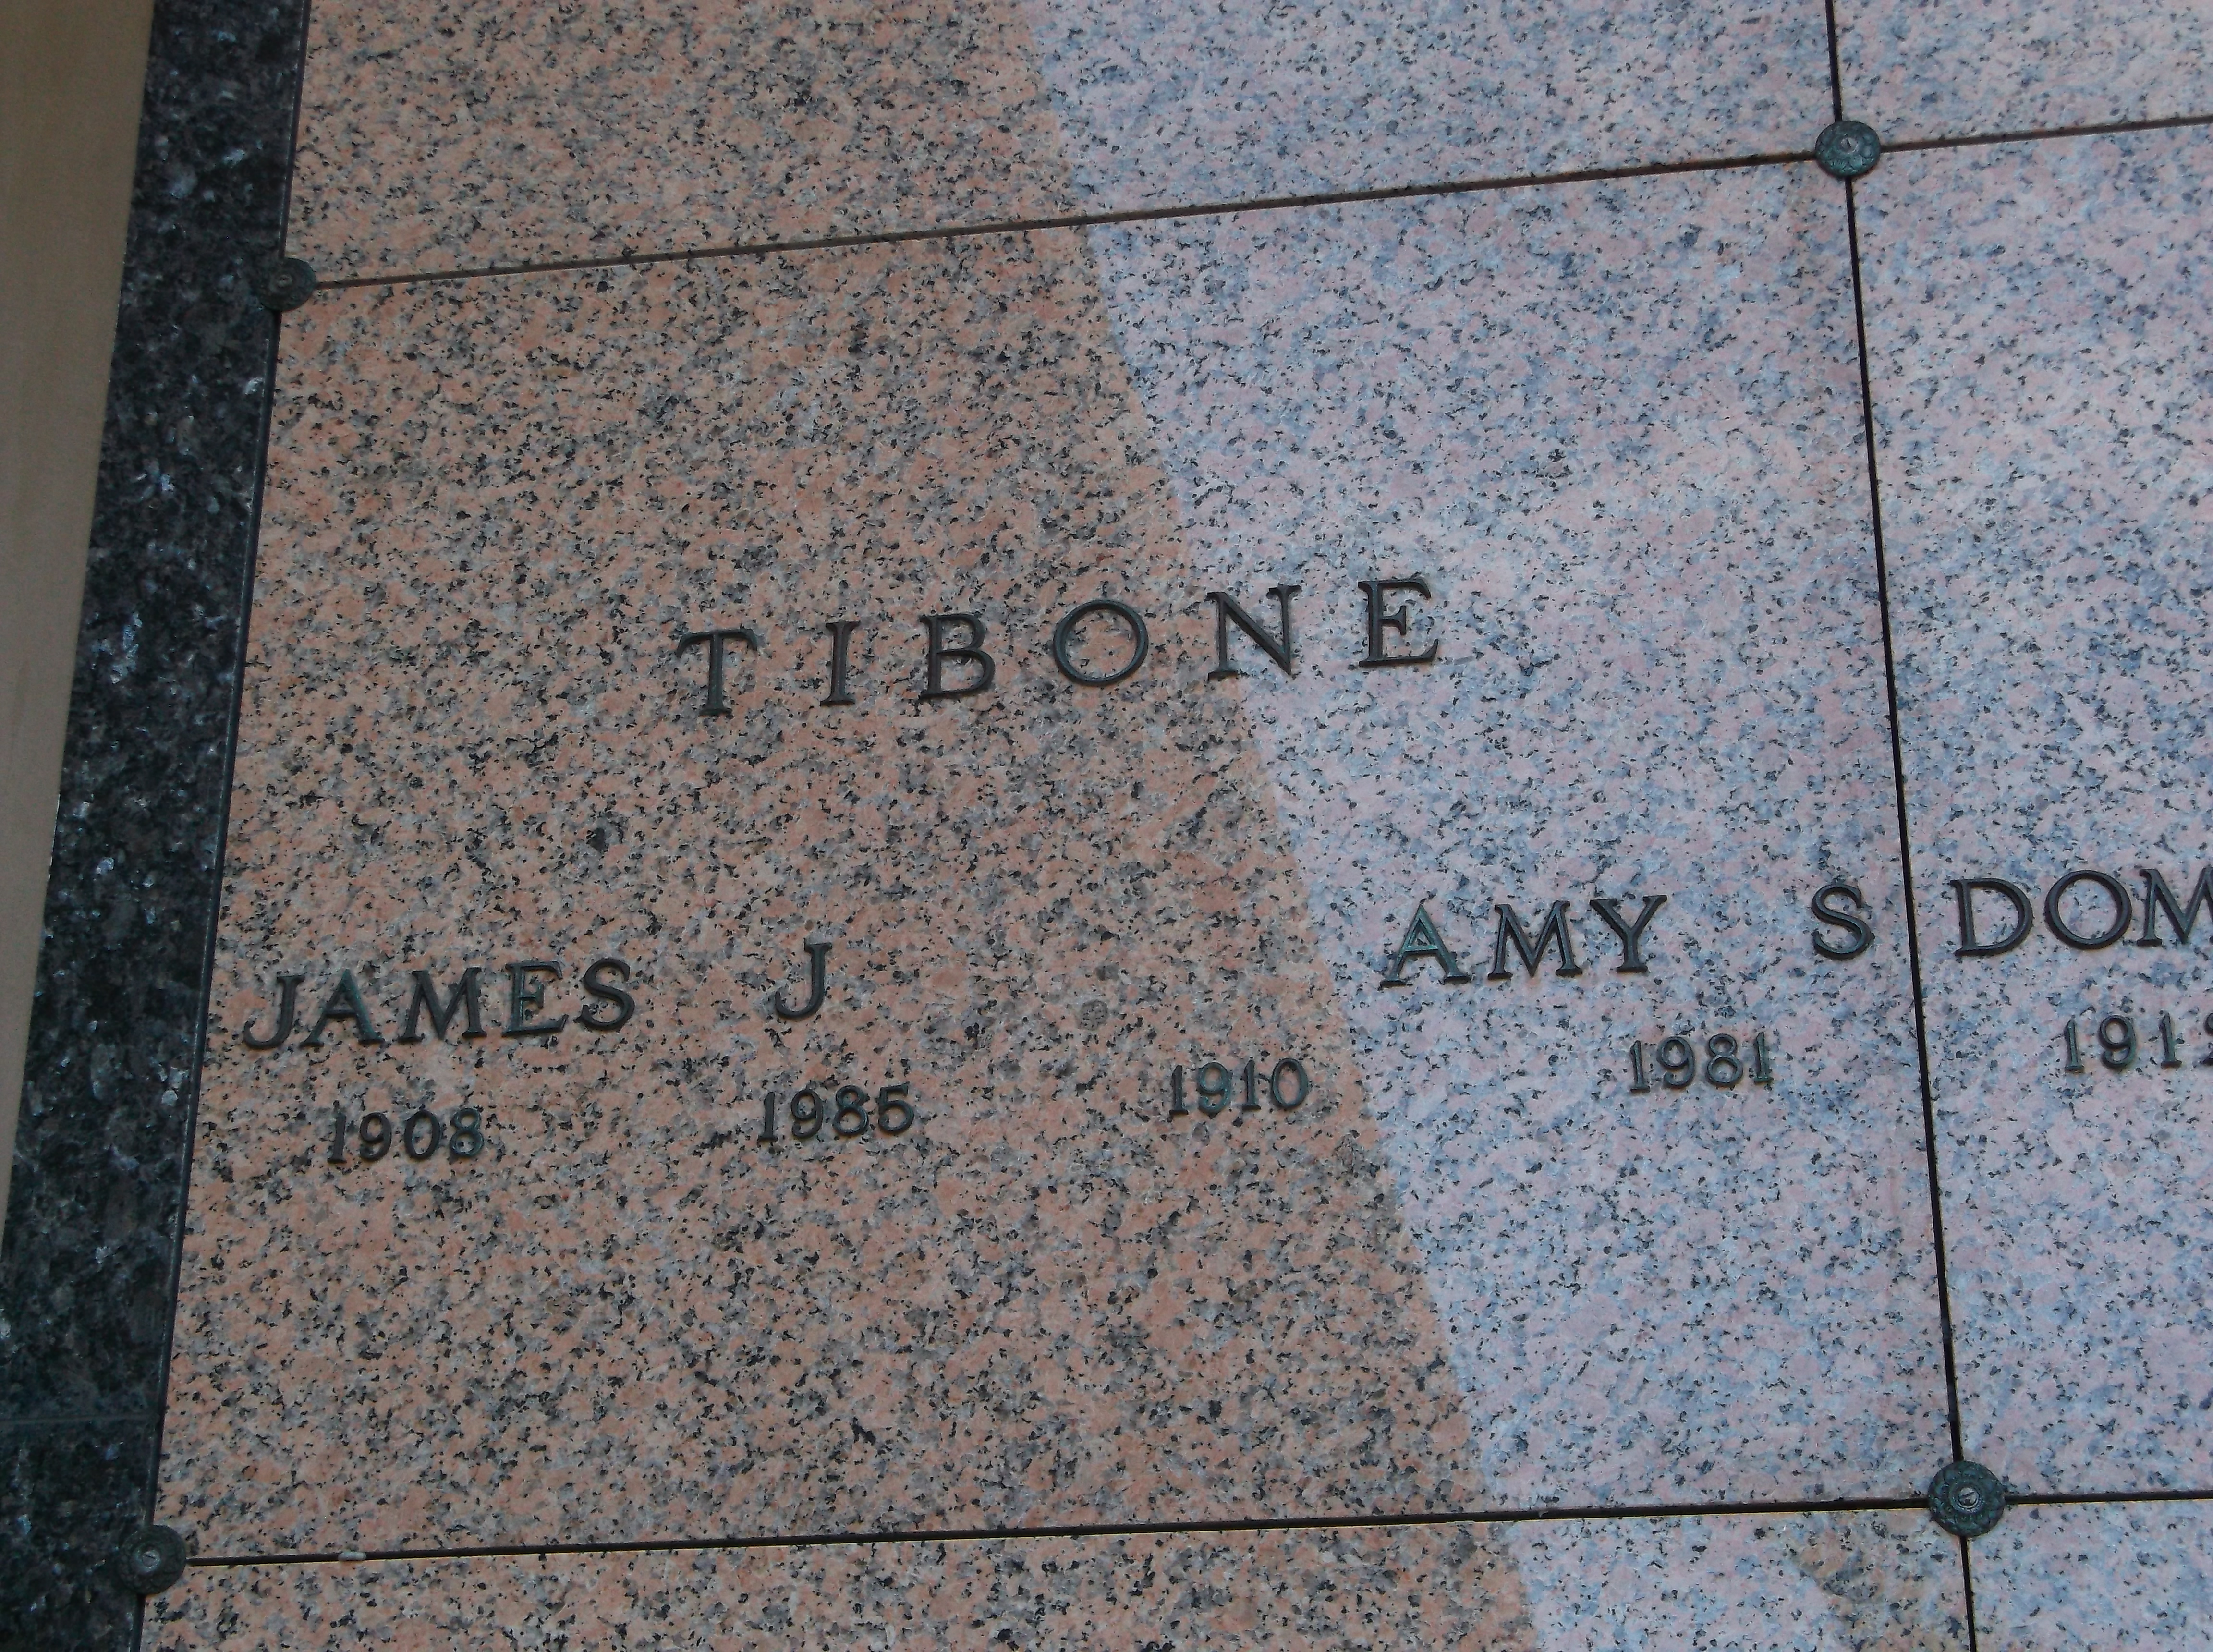 James J Tibone